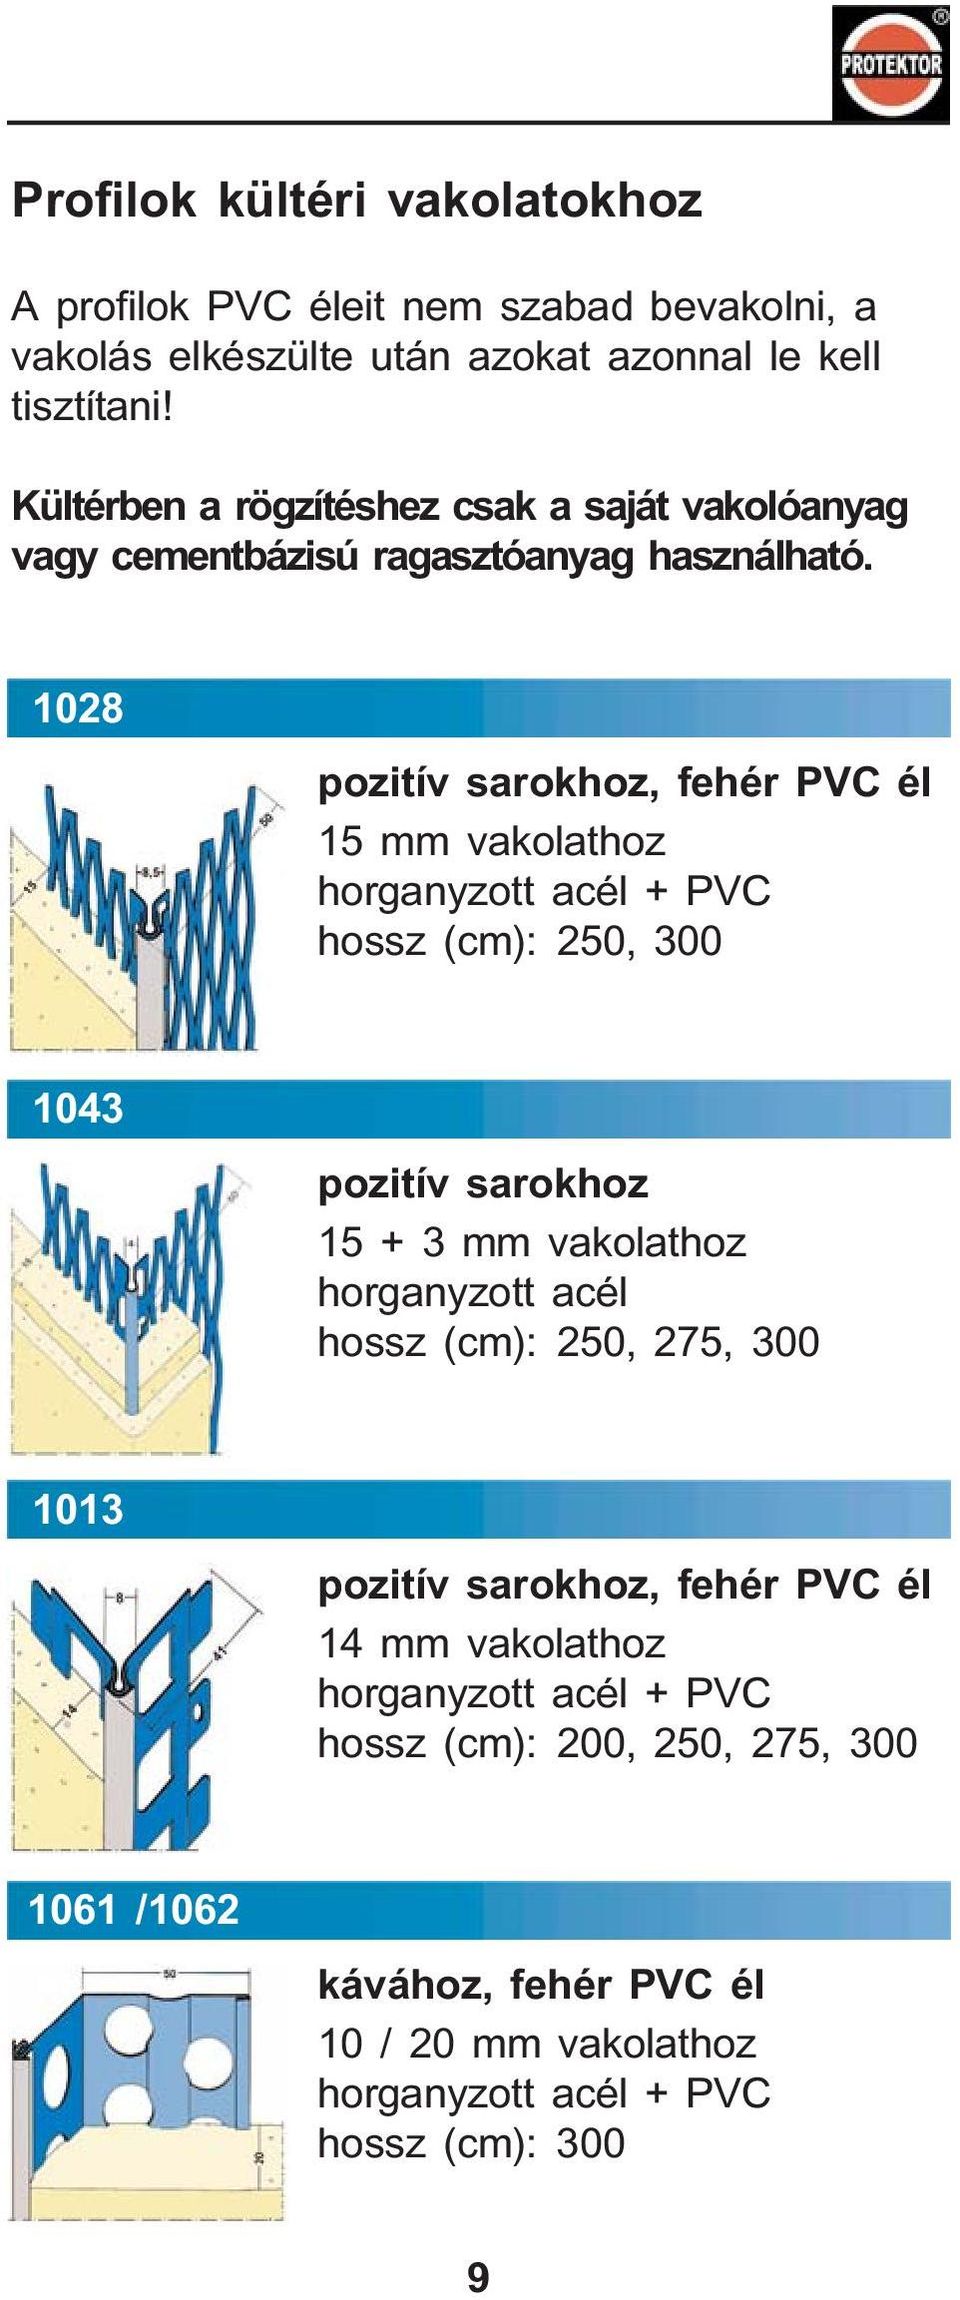 1028 pozitív sarokhoz, fehér PVC él 15 mm vakolathoz + PVC, 300 1043 pozitív sarokhoz 15 + 3 mm vakolathoz, 275, 300 1013